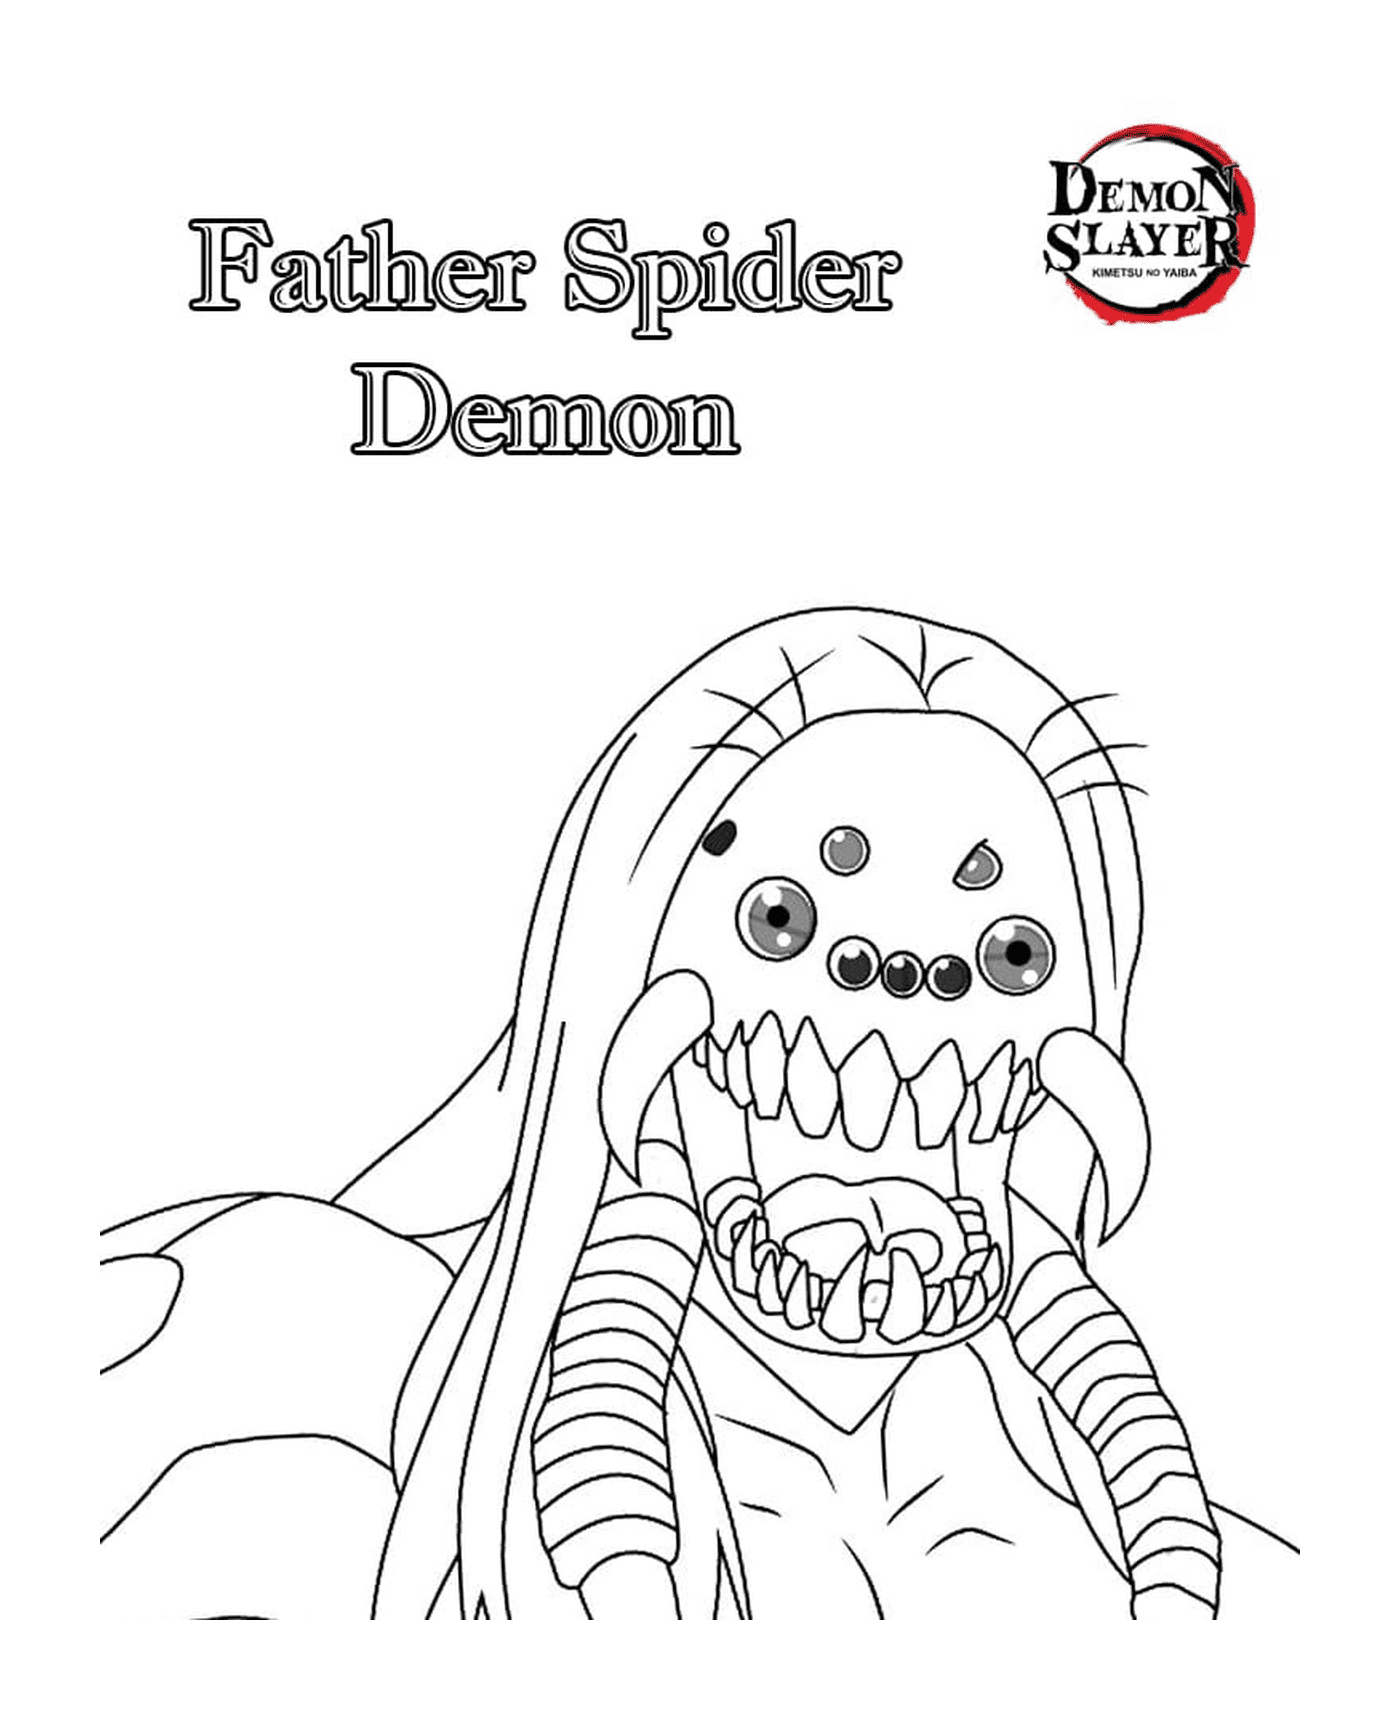  Vater Daemon Spider 